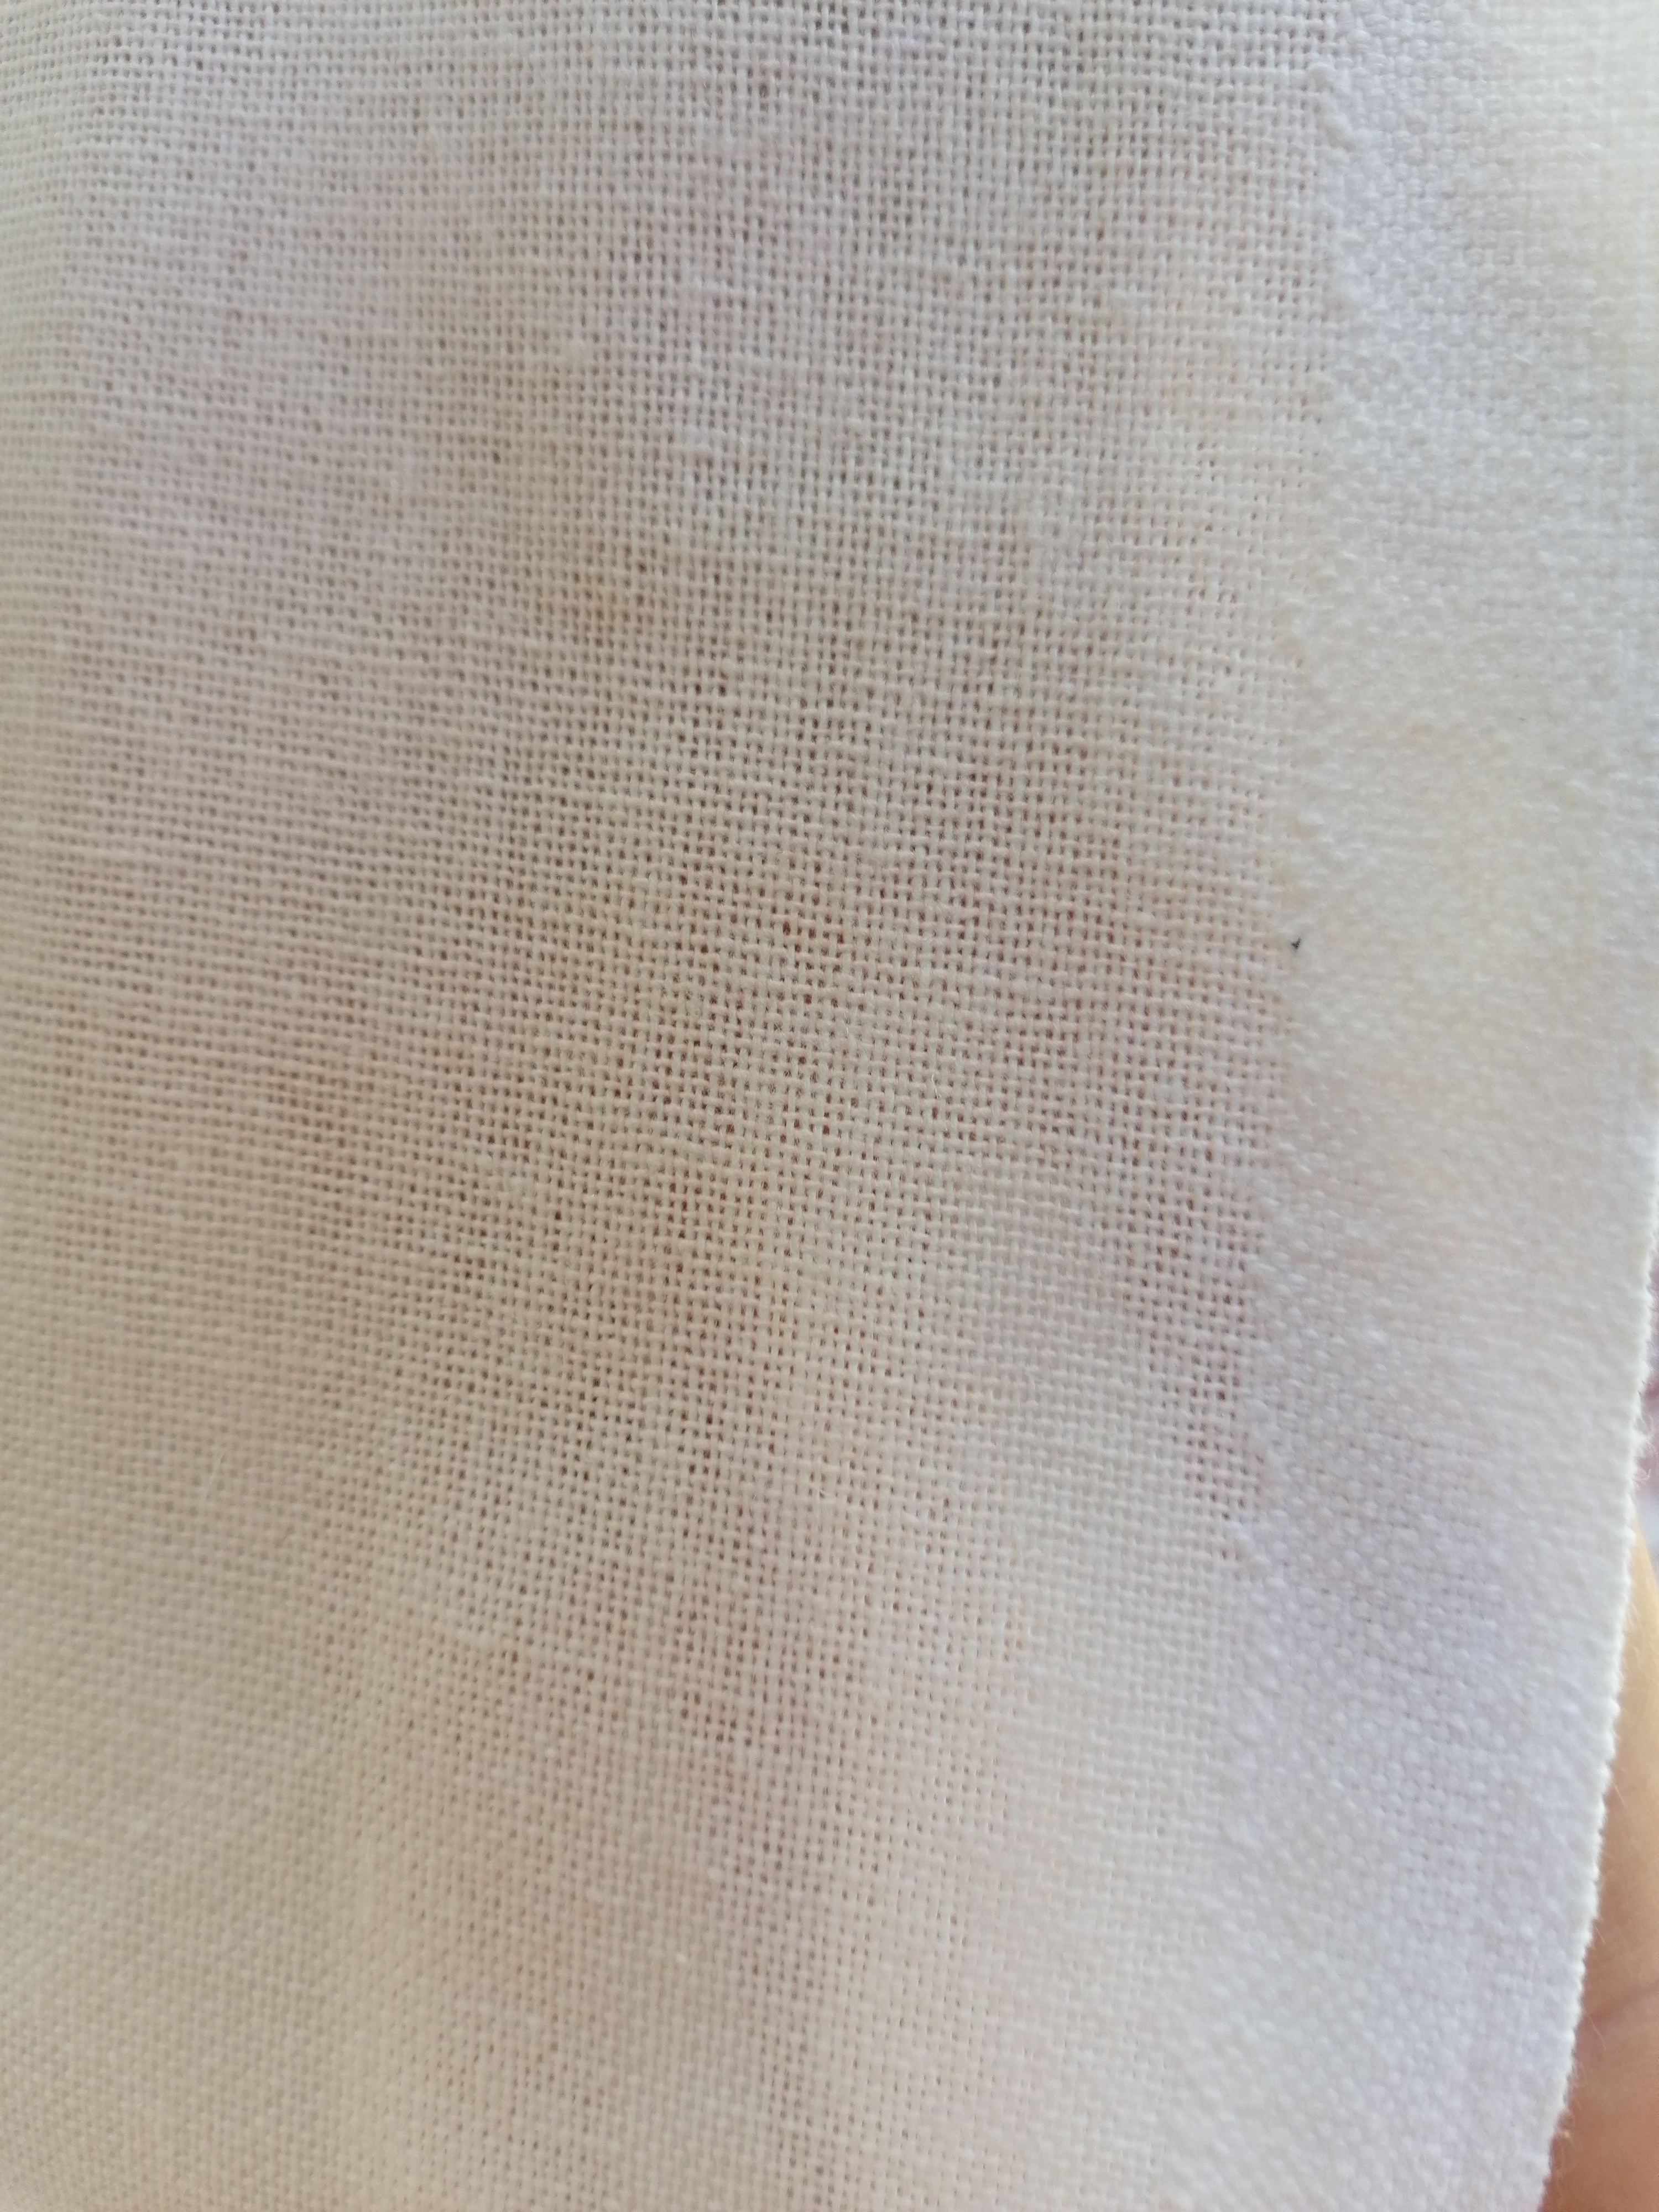 OZANA, pânză medie de bumbac, albită